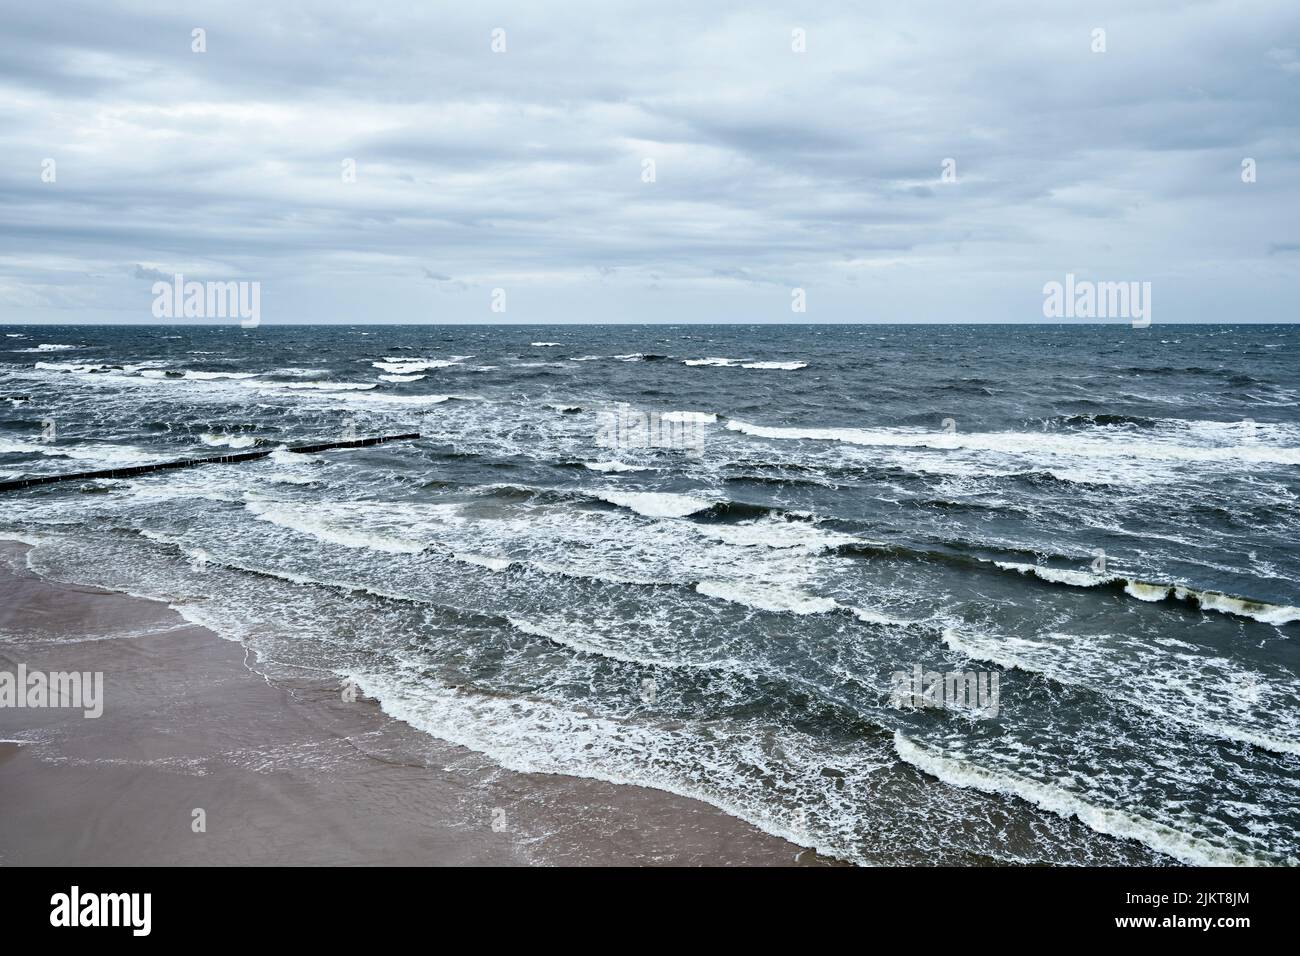 Tranquilo mar Báltico después de una tormenta. La costa polaca del Báltico cerca de las ciudades de Dziwnow y Trzesacz. Playa vacía, olas tormentosas. Foto de stock